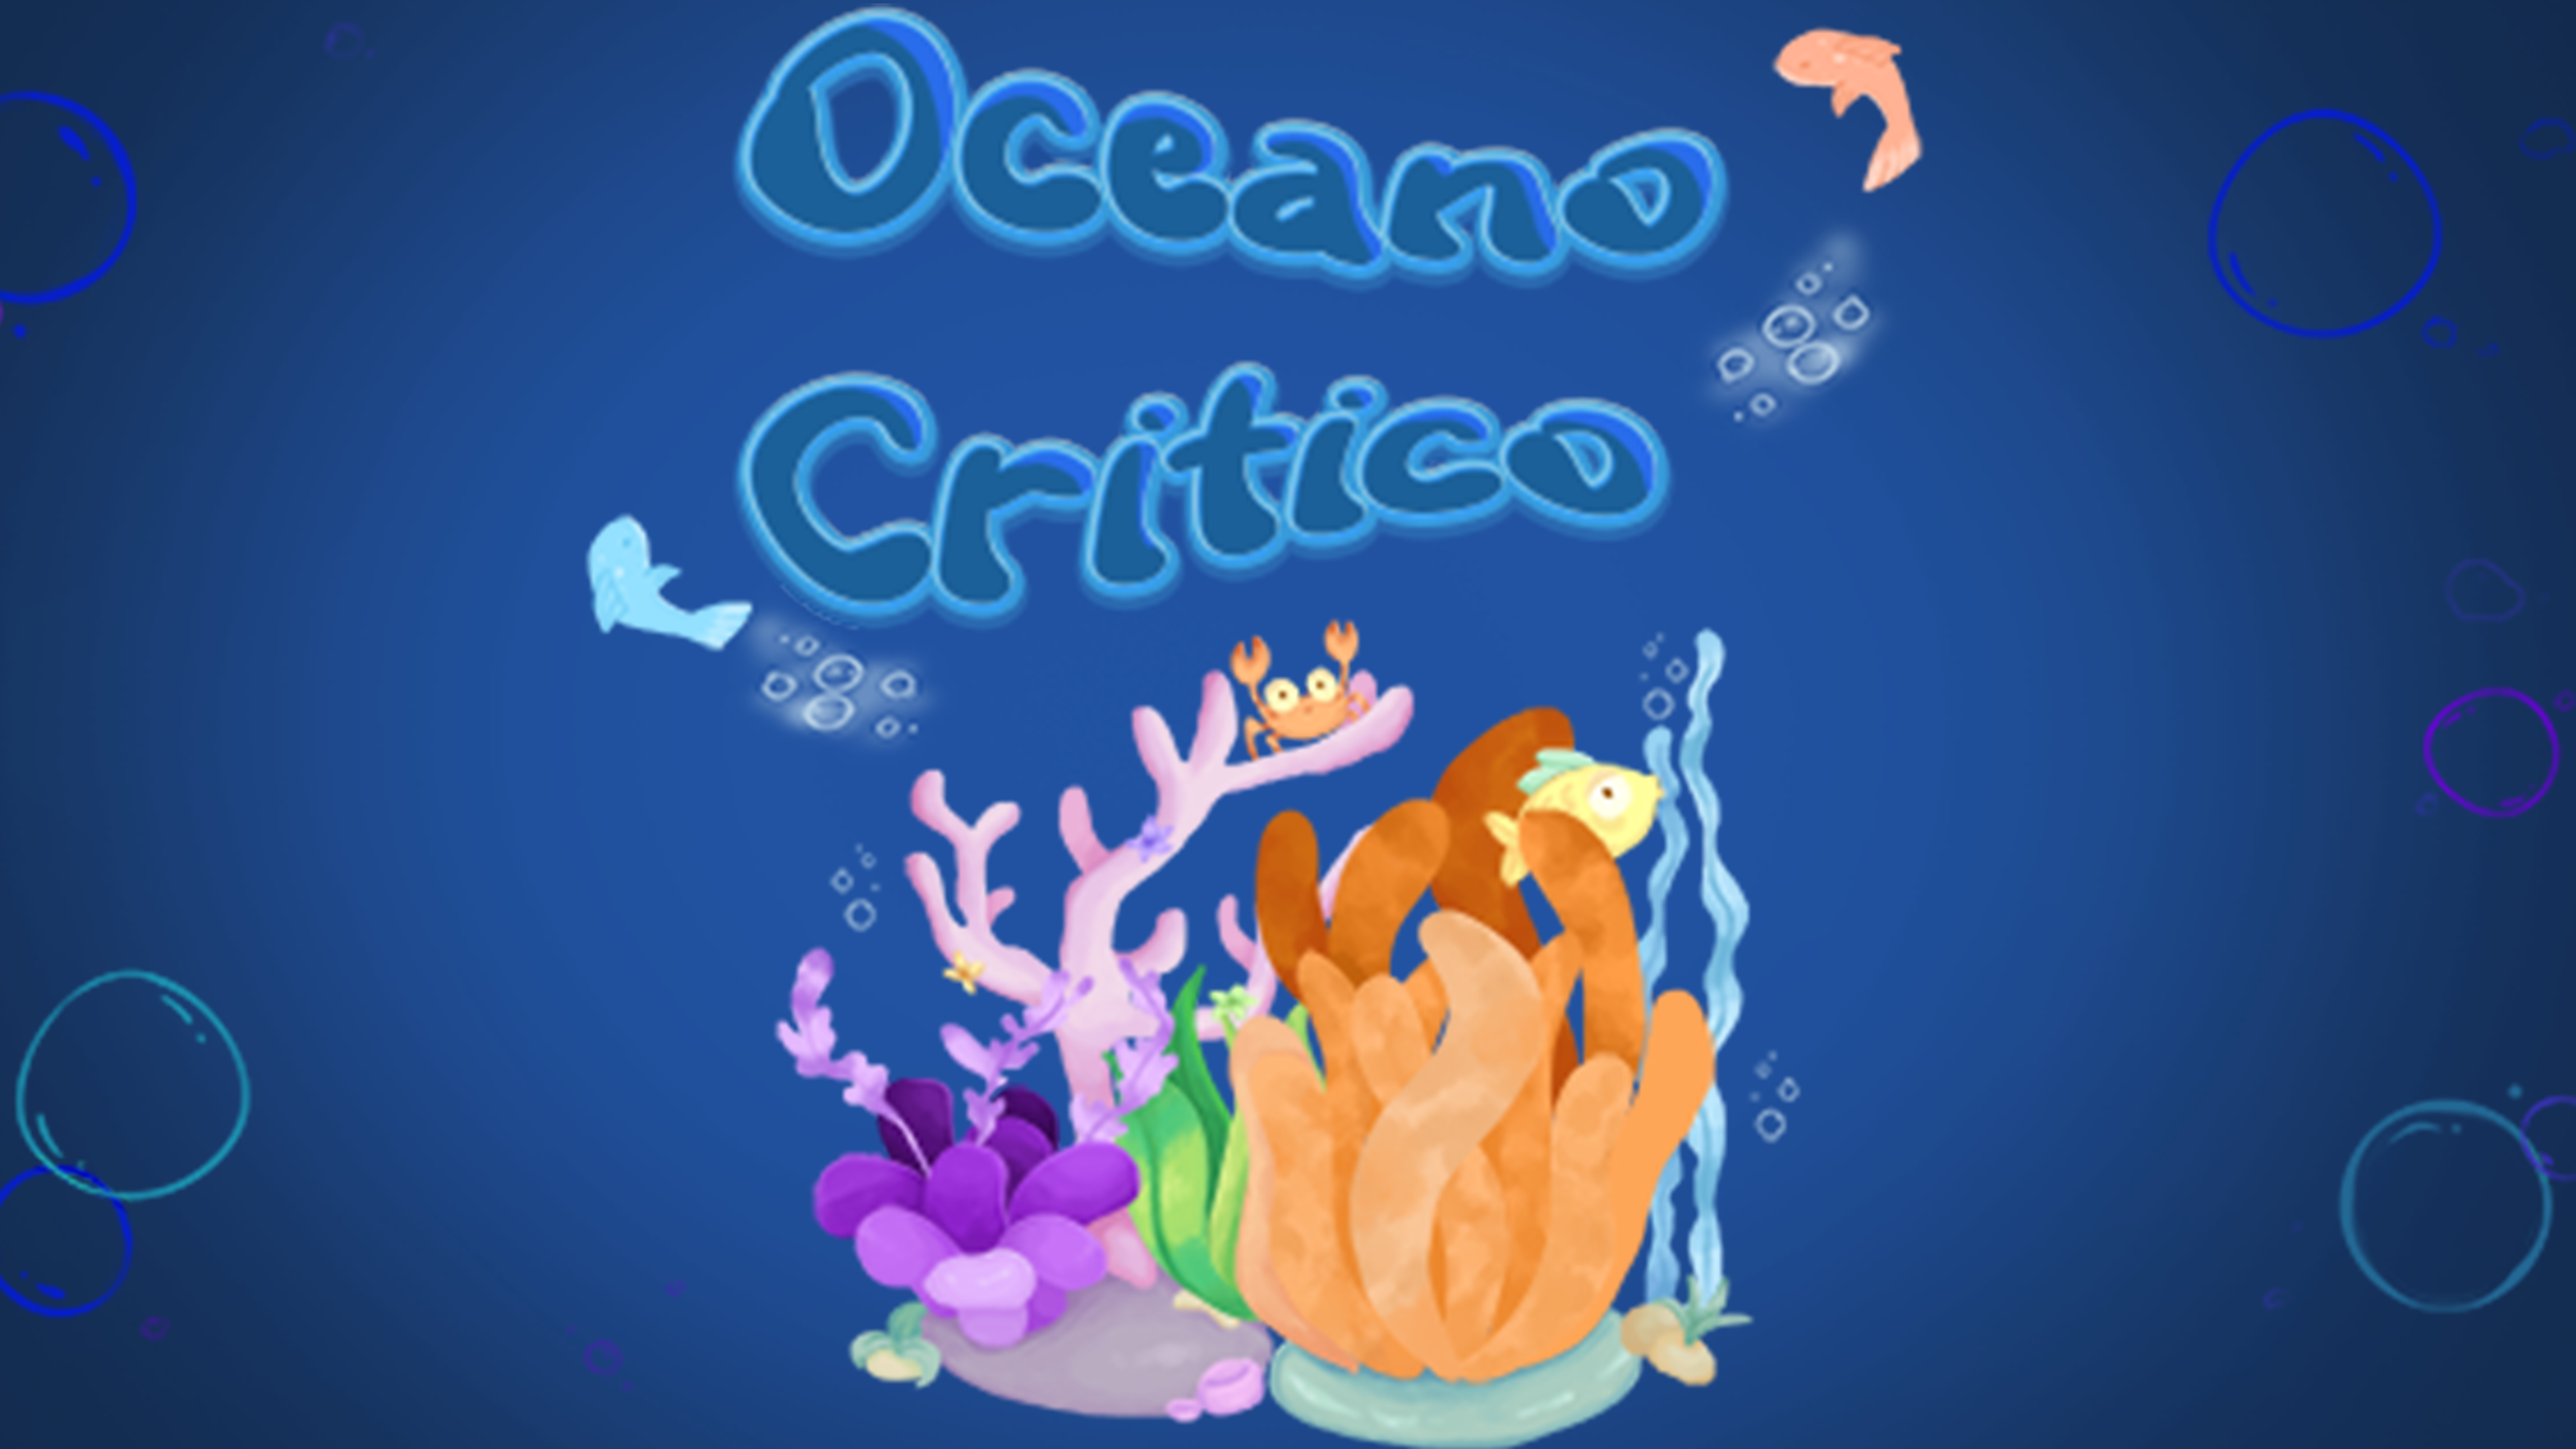 Oceano Critico